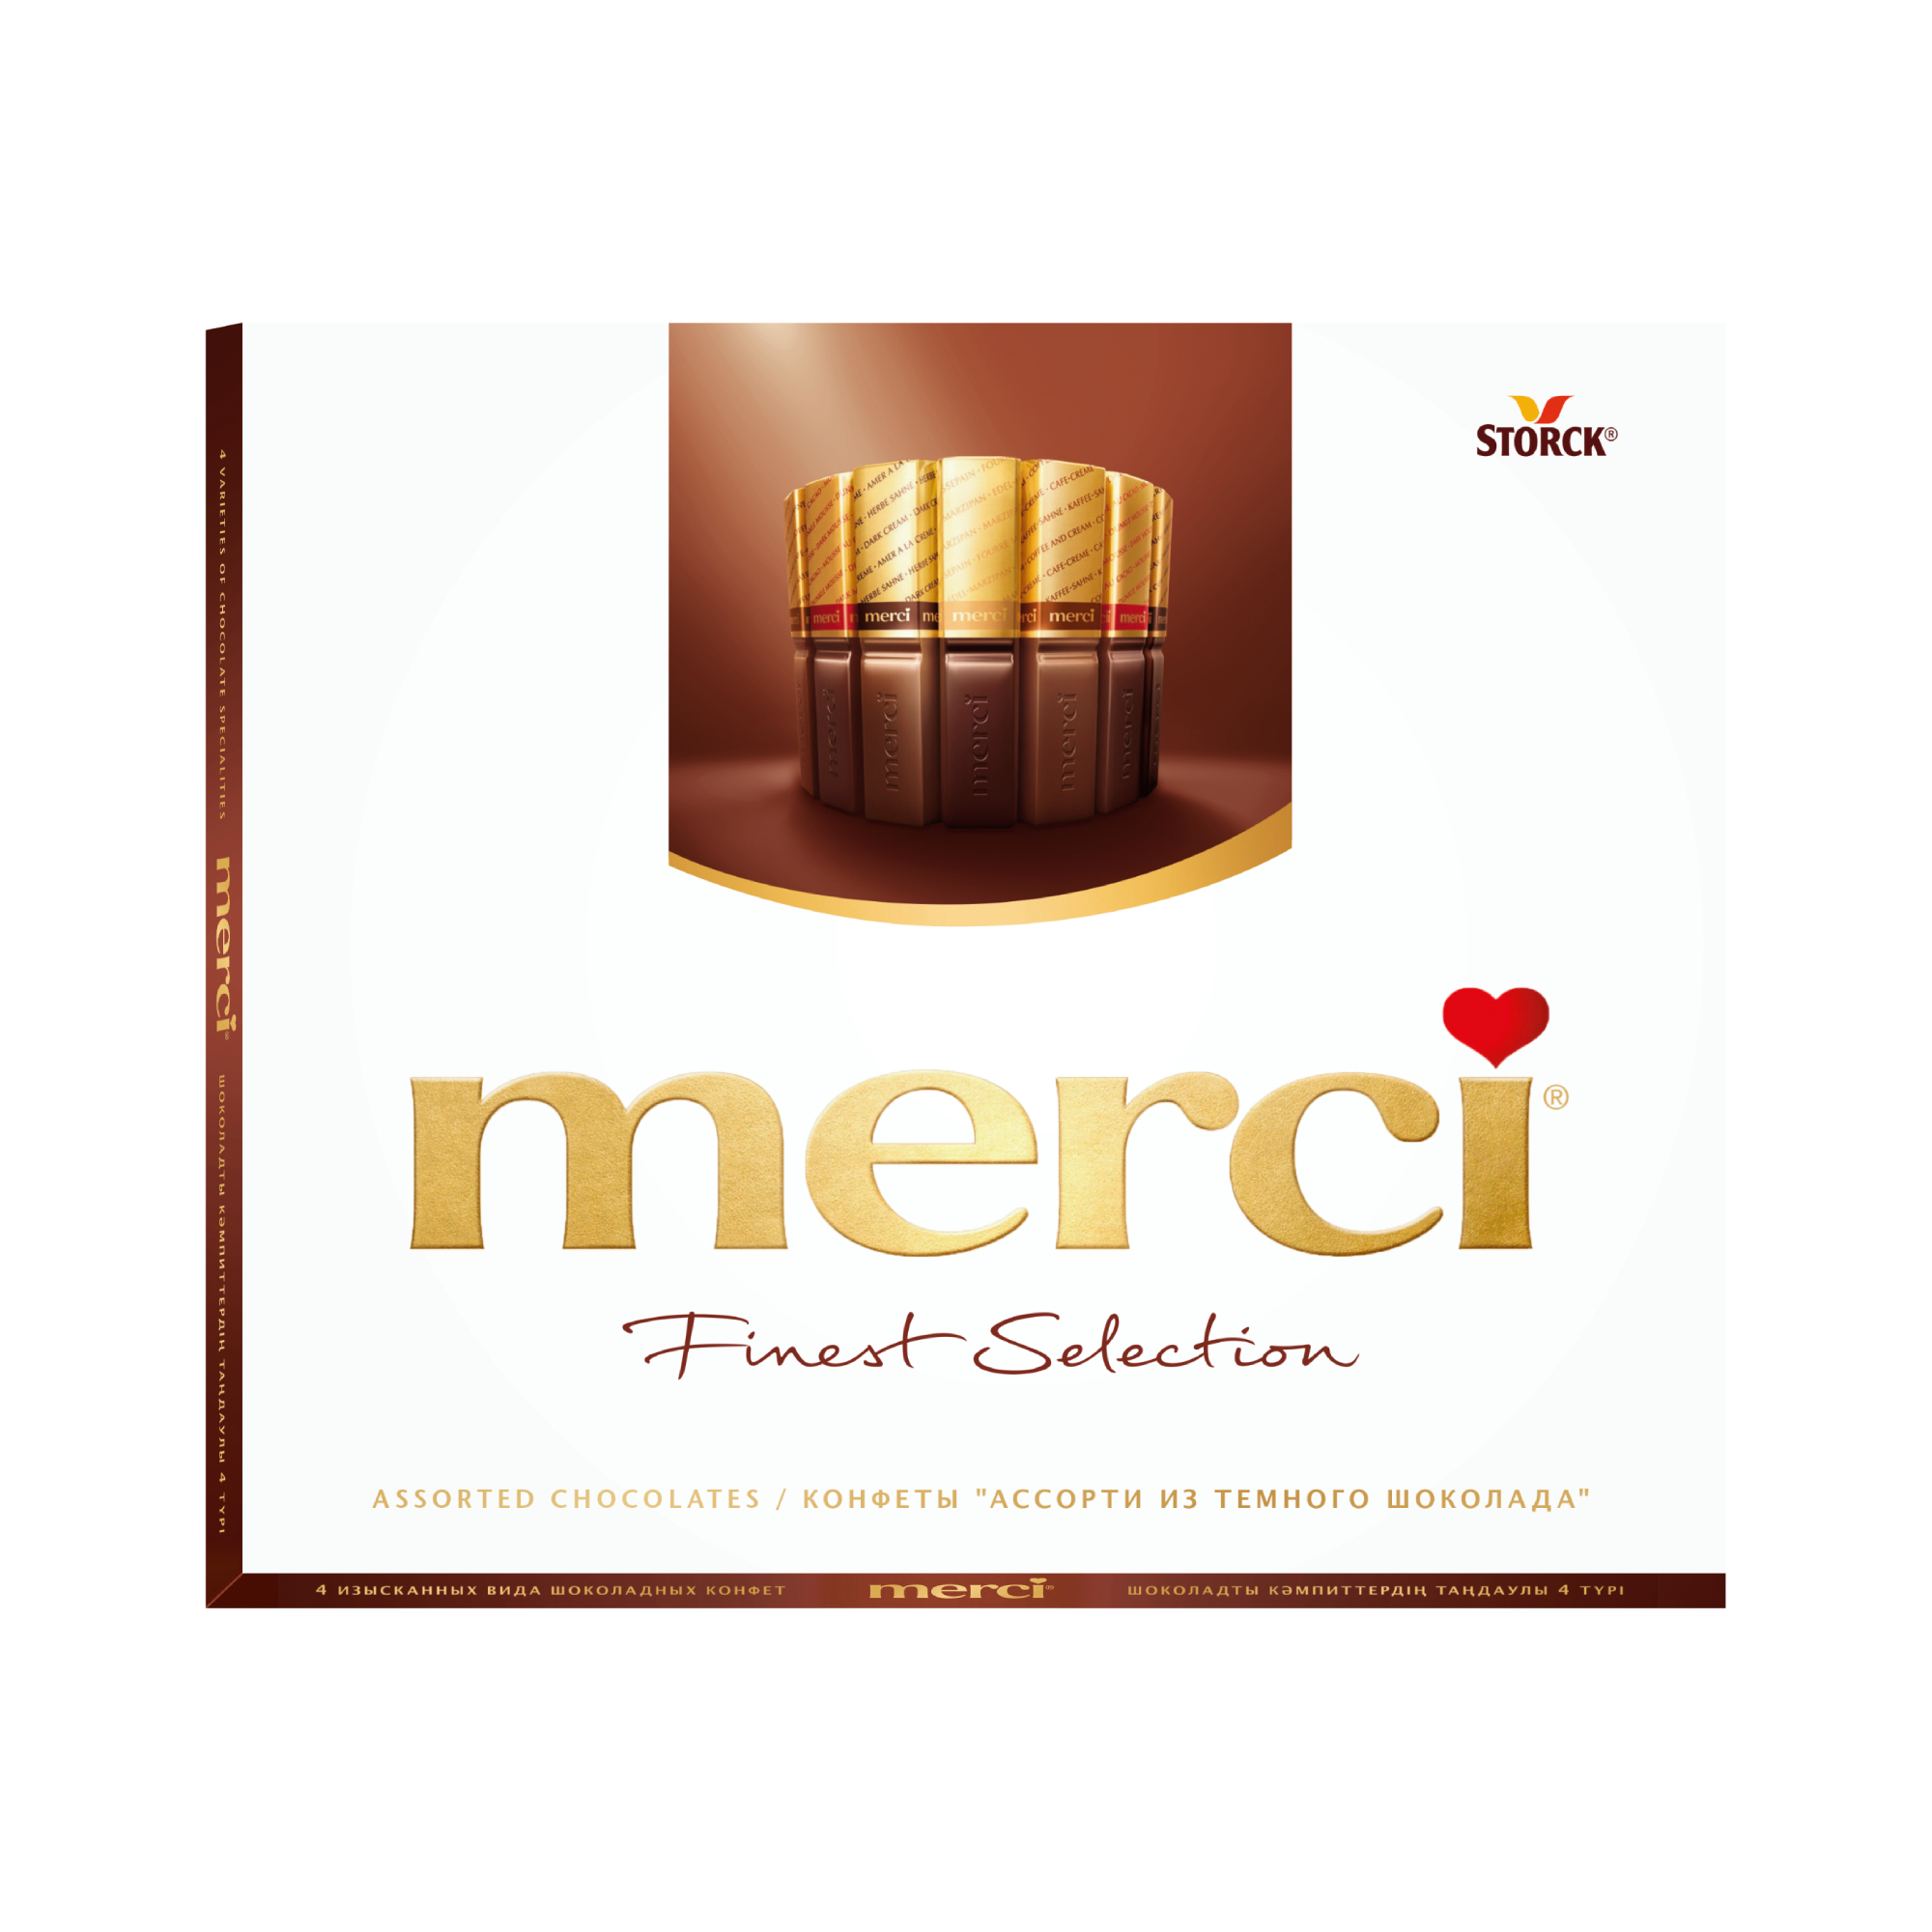 набор конфет merci ассорти с начинкой шоколадный мусс 210 г Шоколадный набор Storck Merci Ассорти 4 вида с начинкой из шоколадного мусса 210 г